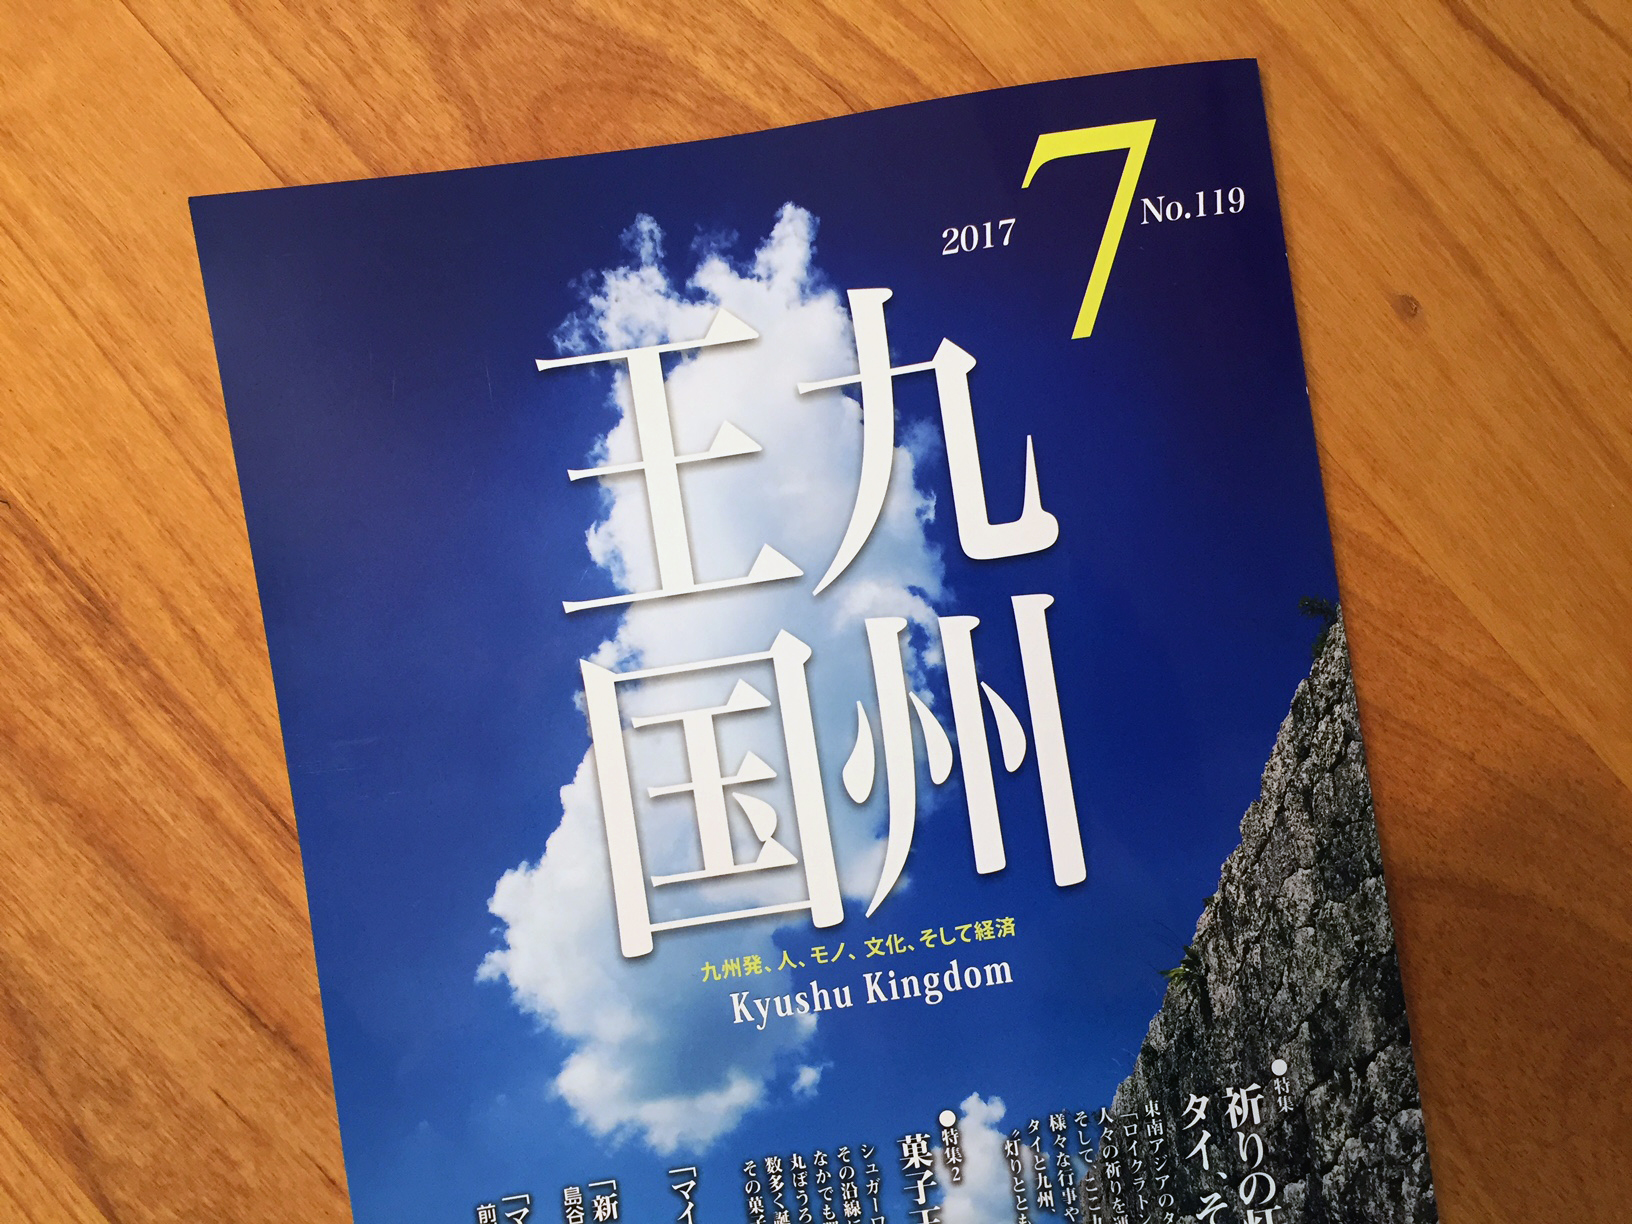 月刊誌「九州王国」にリストランテ厨が掲載されました。